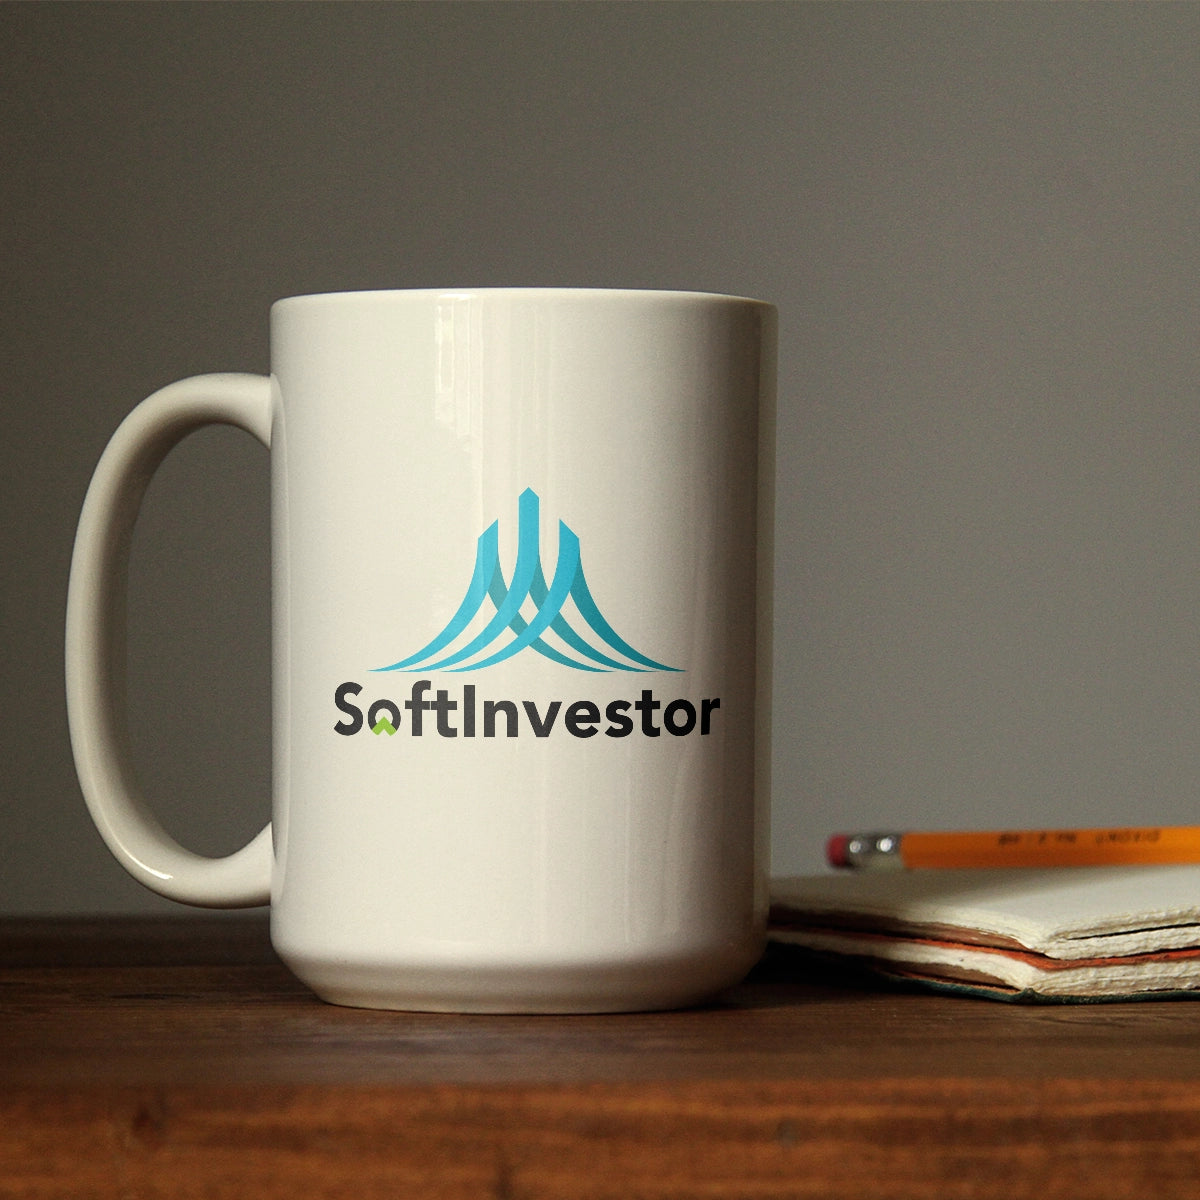 softinvestor.com